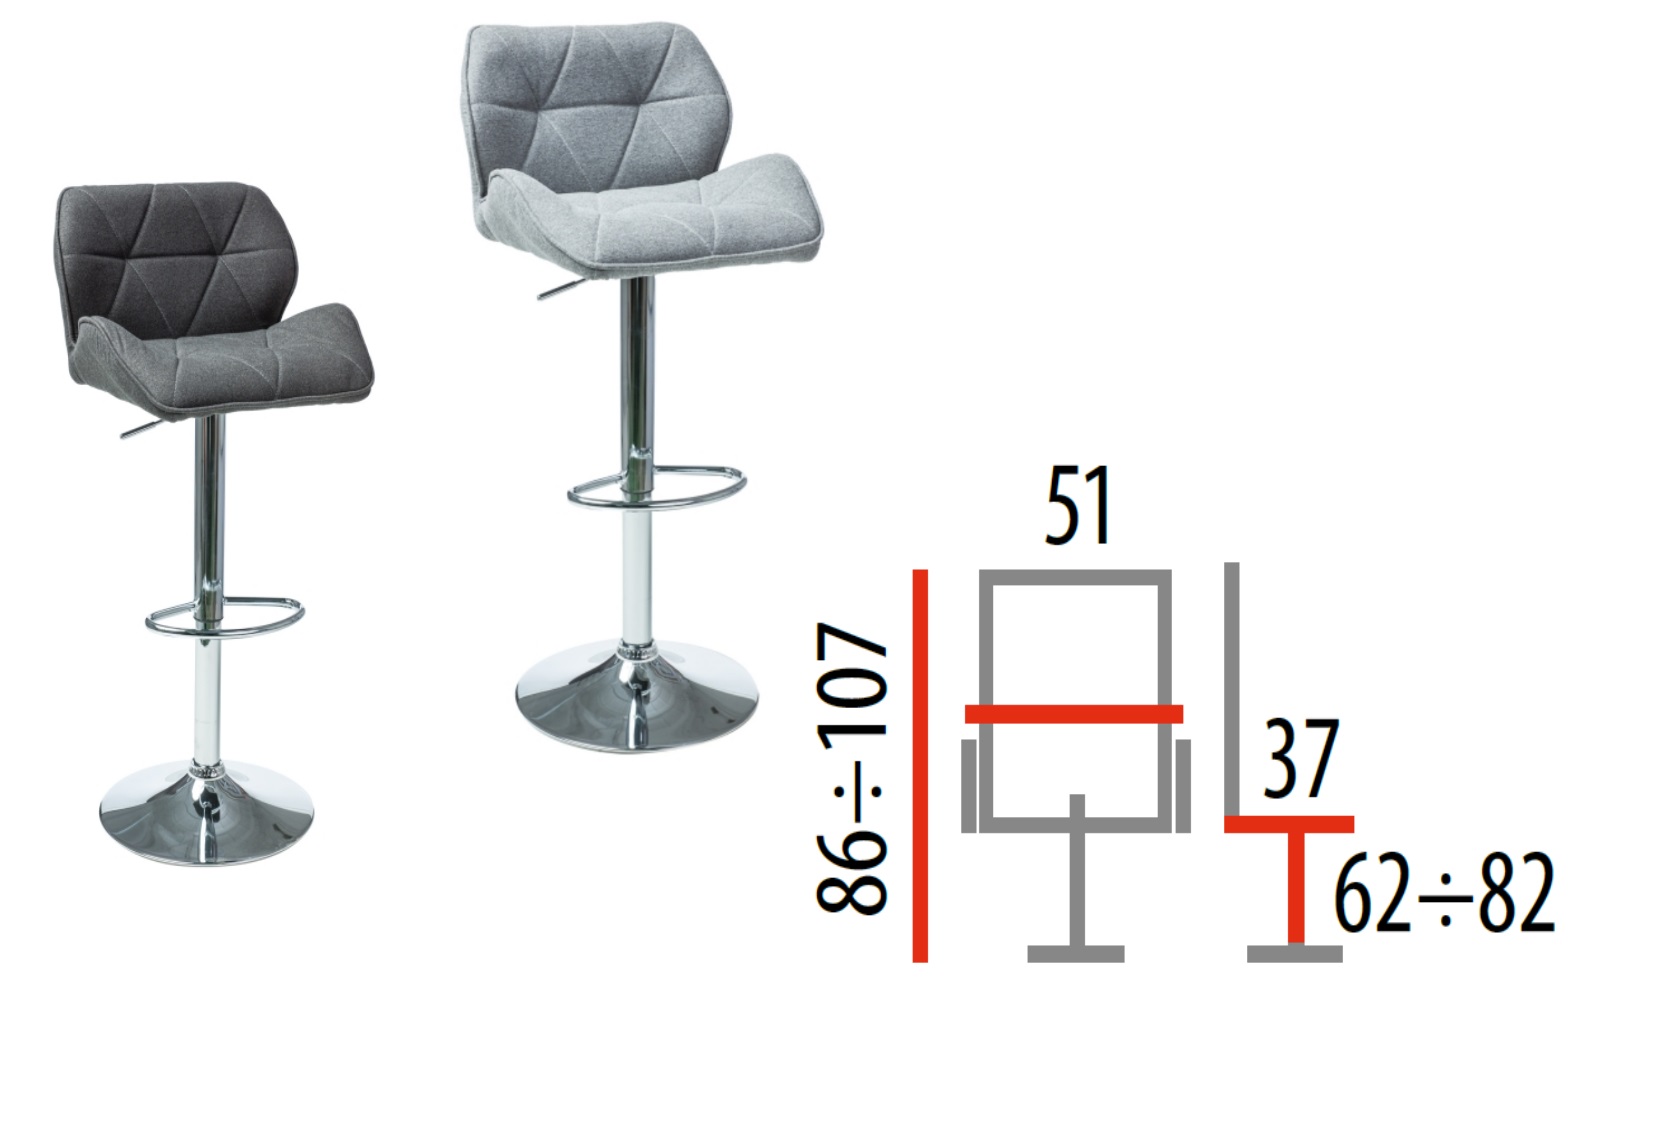 Барные стулья высота сиденья 85